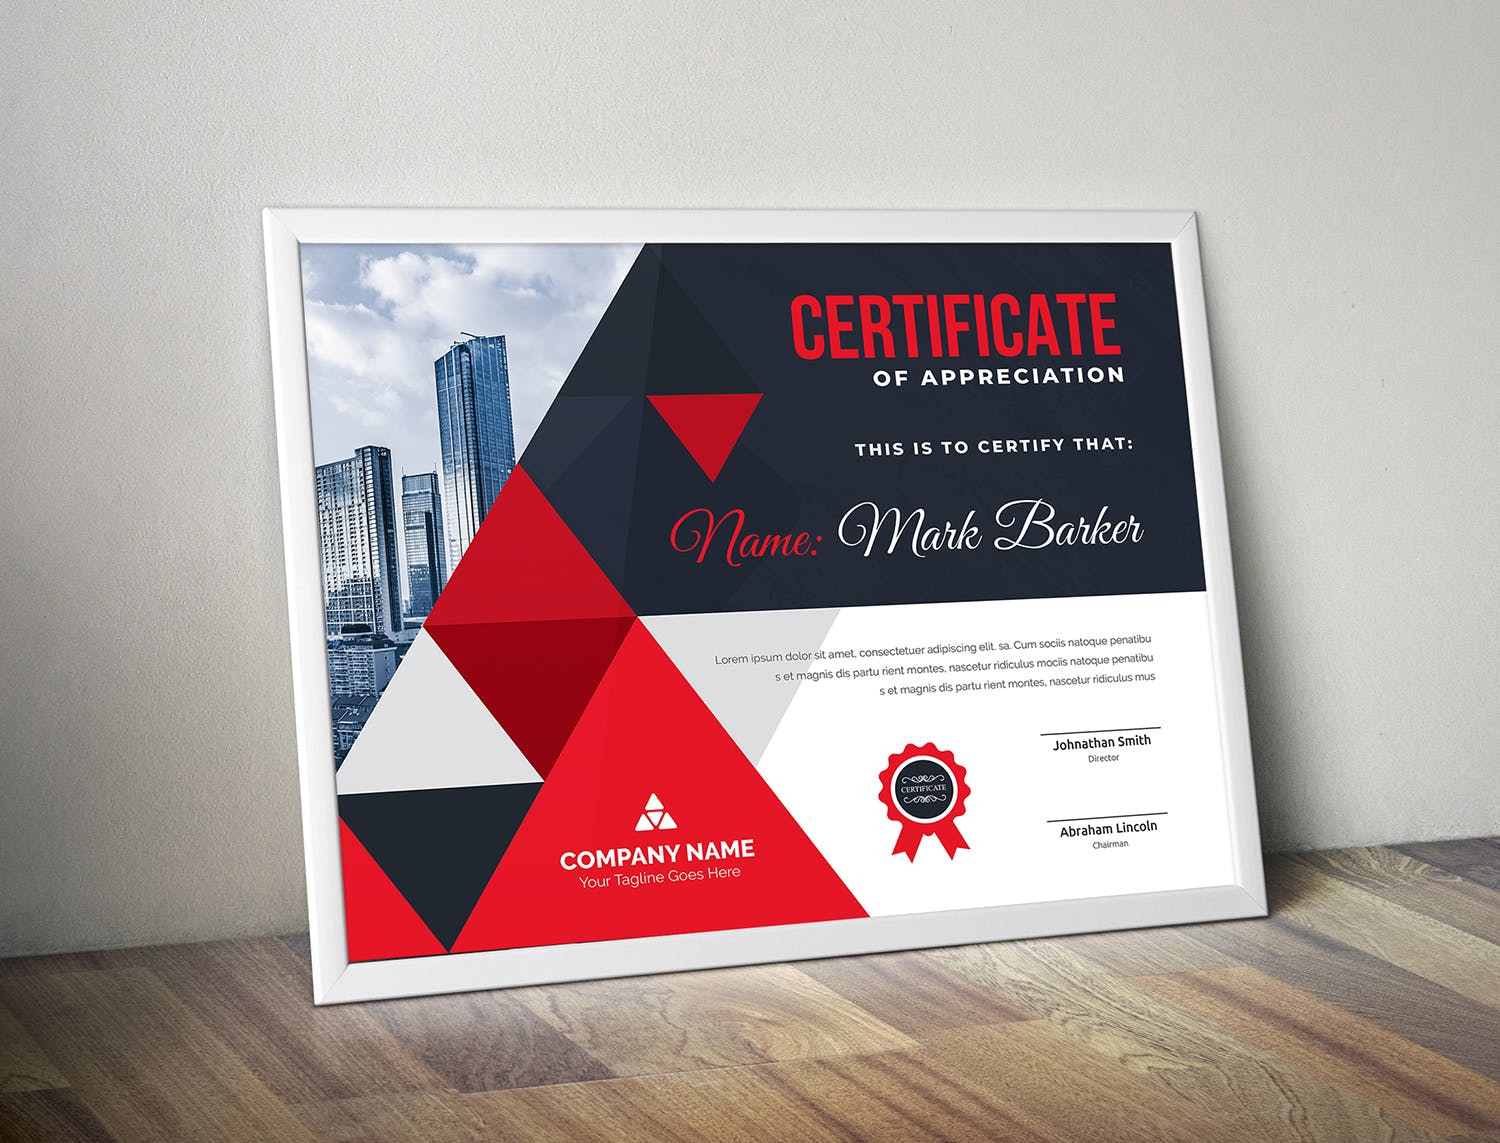 品牌销售代理/资格认证证书设计模板 Certificate插图(1)